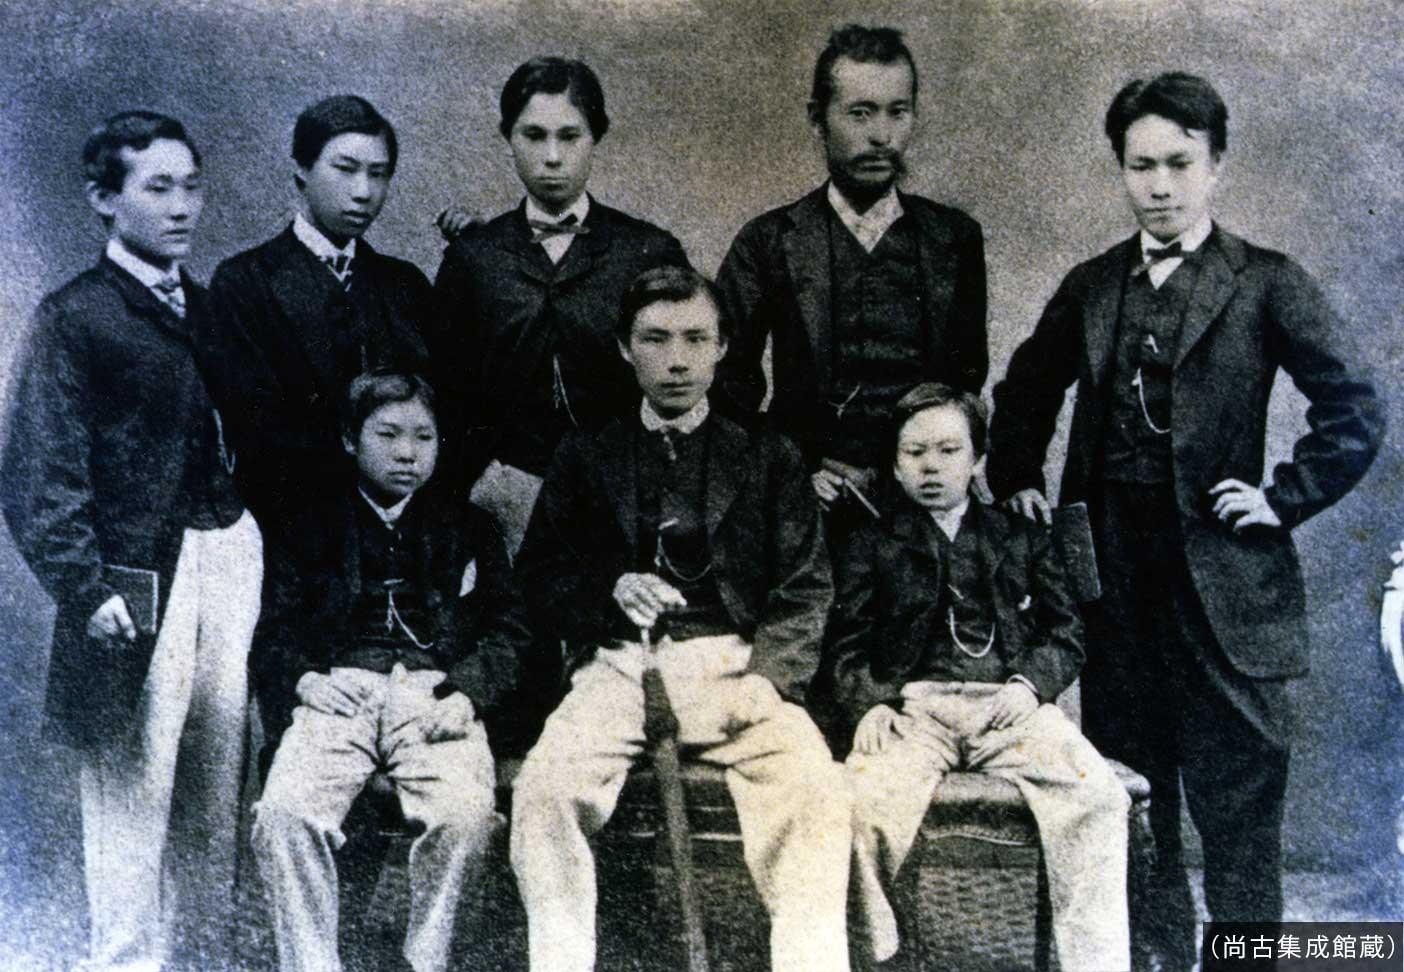 薩摩藩英国留学生が集合したの白黒写真